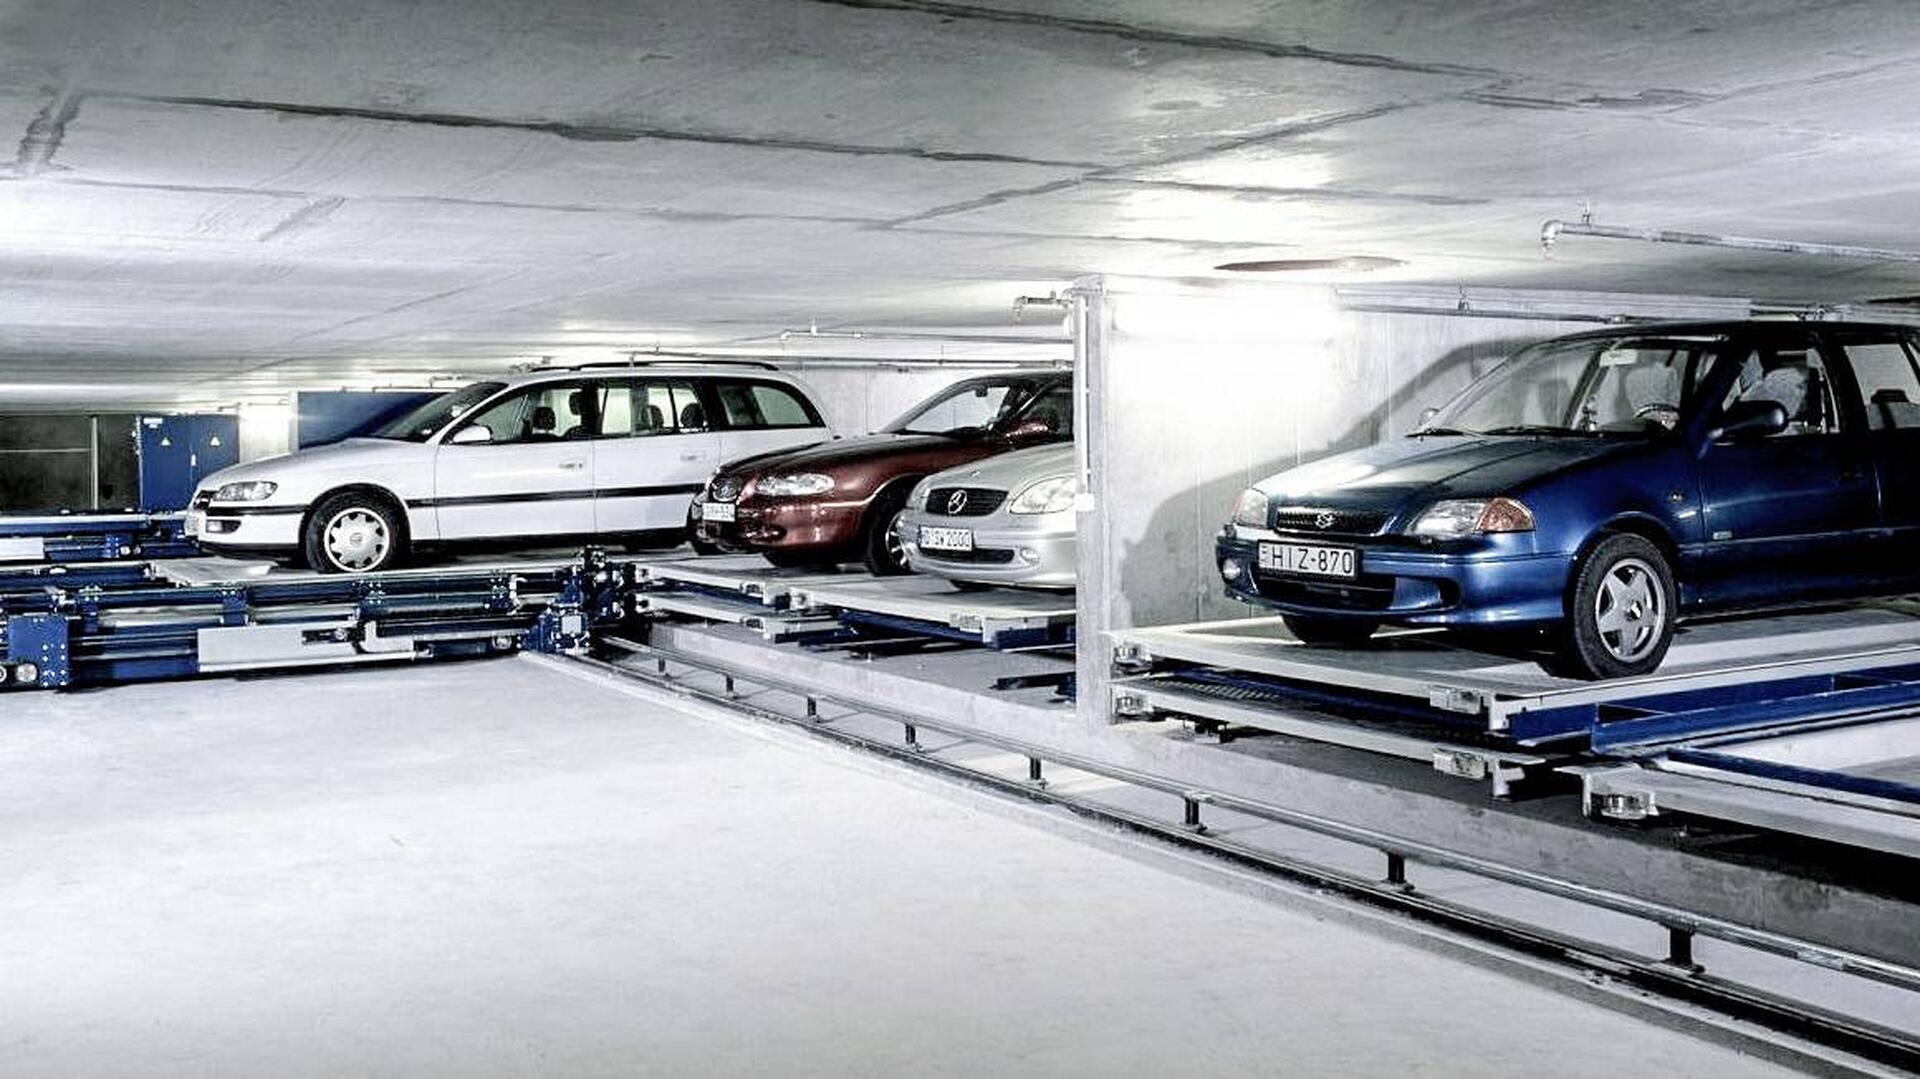 Multiparker 730 - impianto di parcheggio auto automatizzato a scaffalature